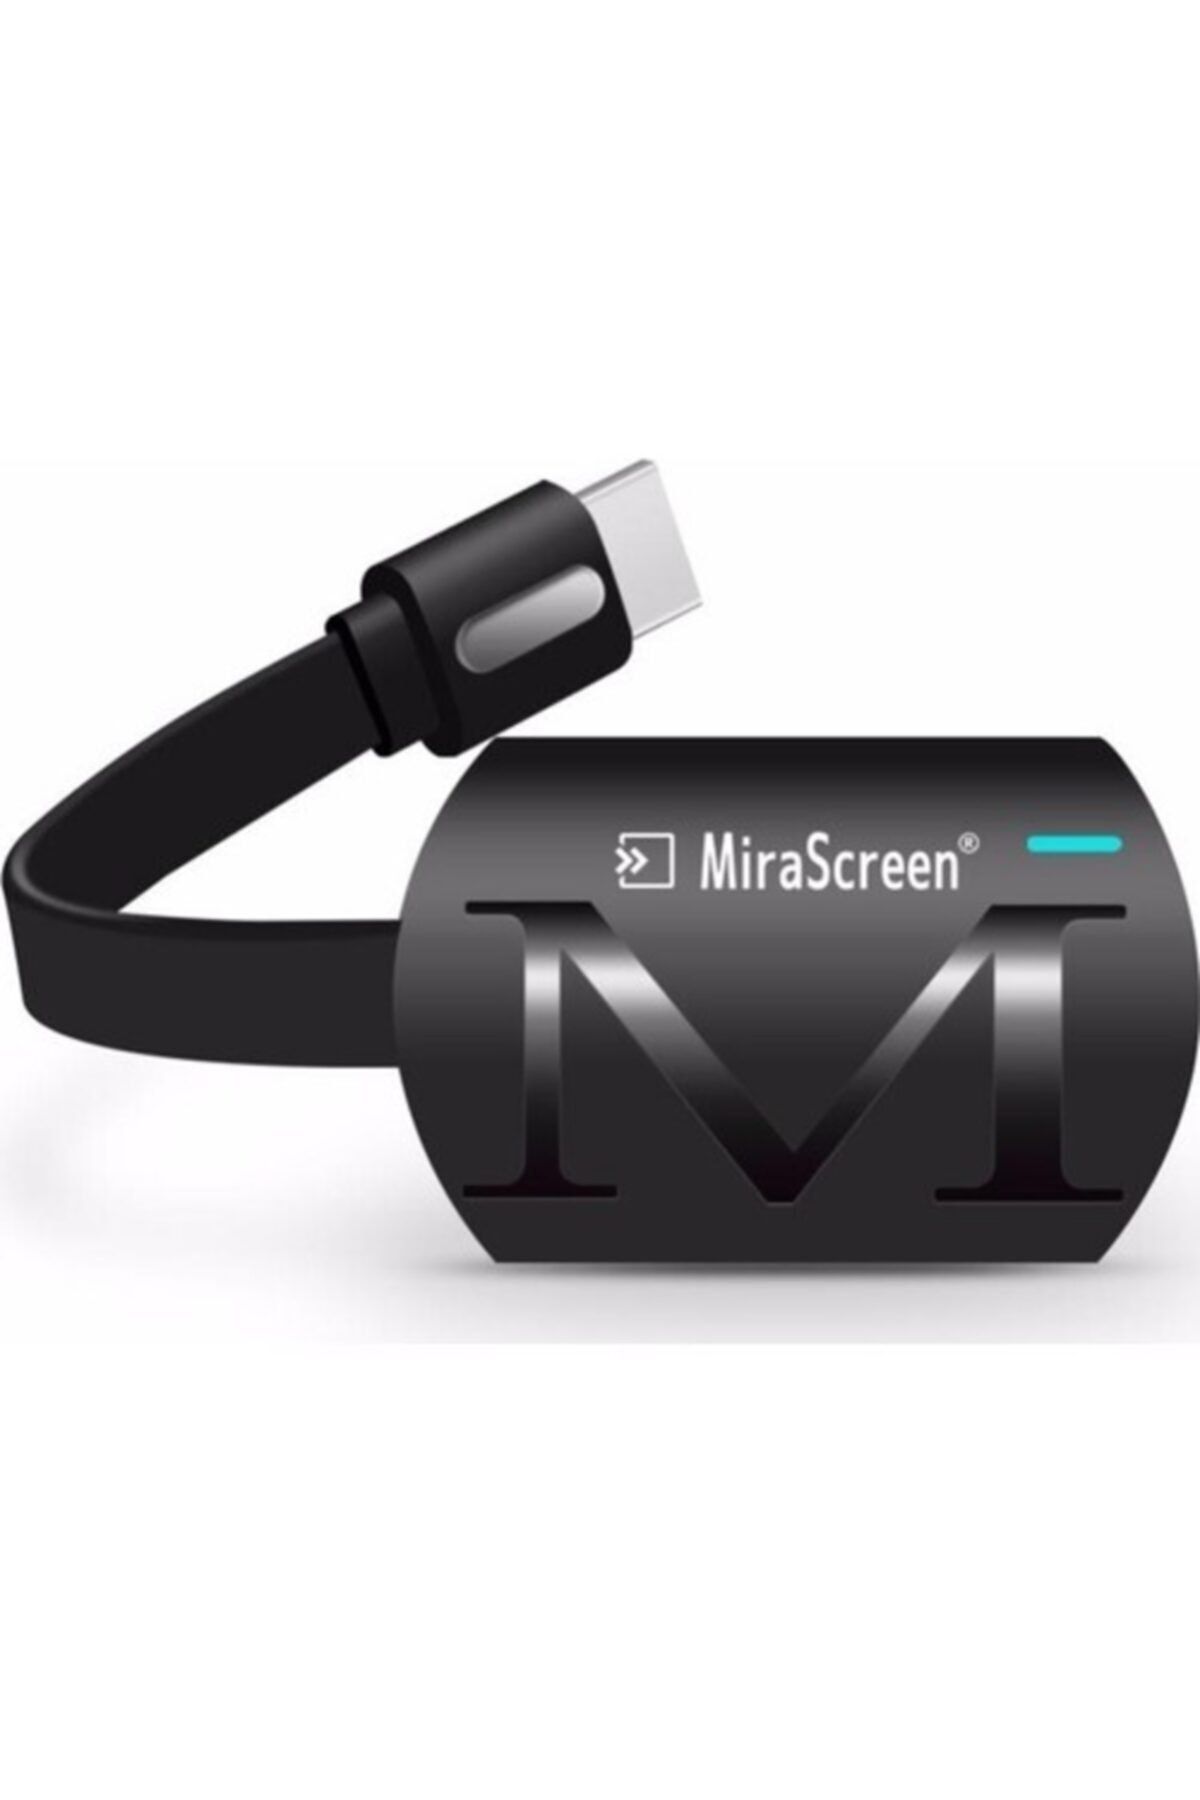 Mirascreen G4 Yeni Sürüm Kablosuz Görüntü Aktarım Cihazı Hd 1080